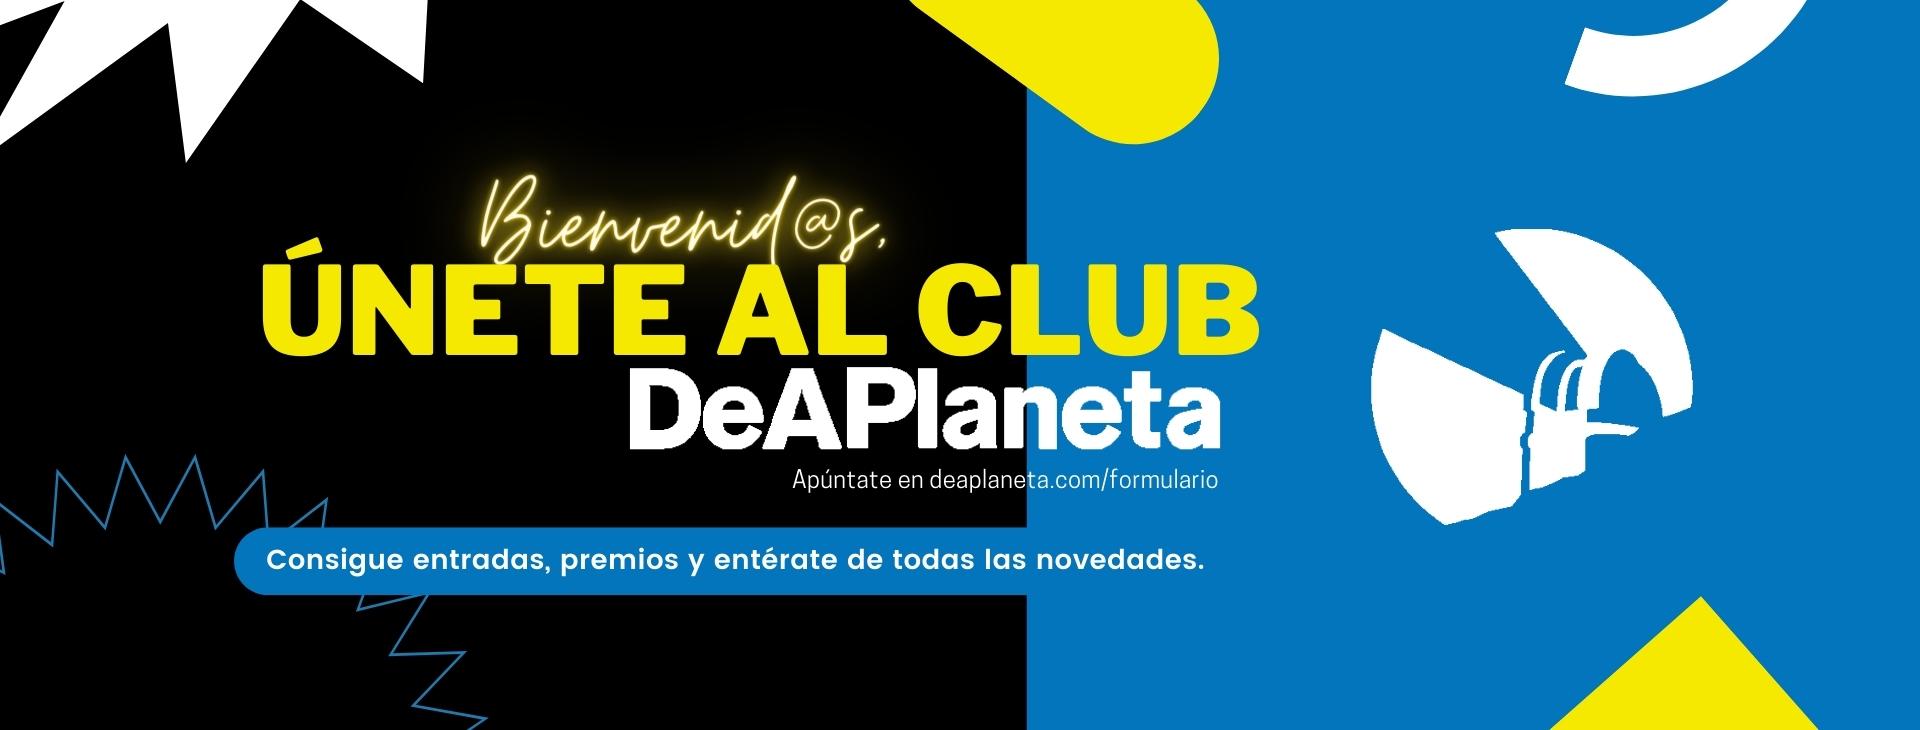 Únete al Club DeAPlaneta